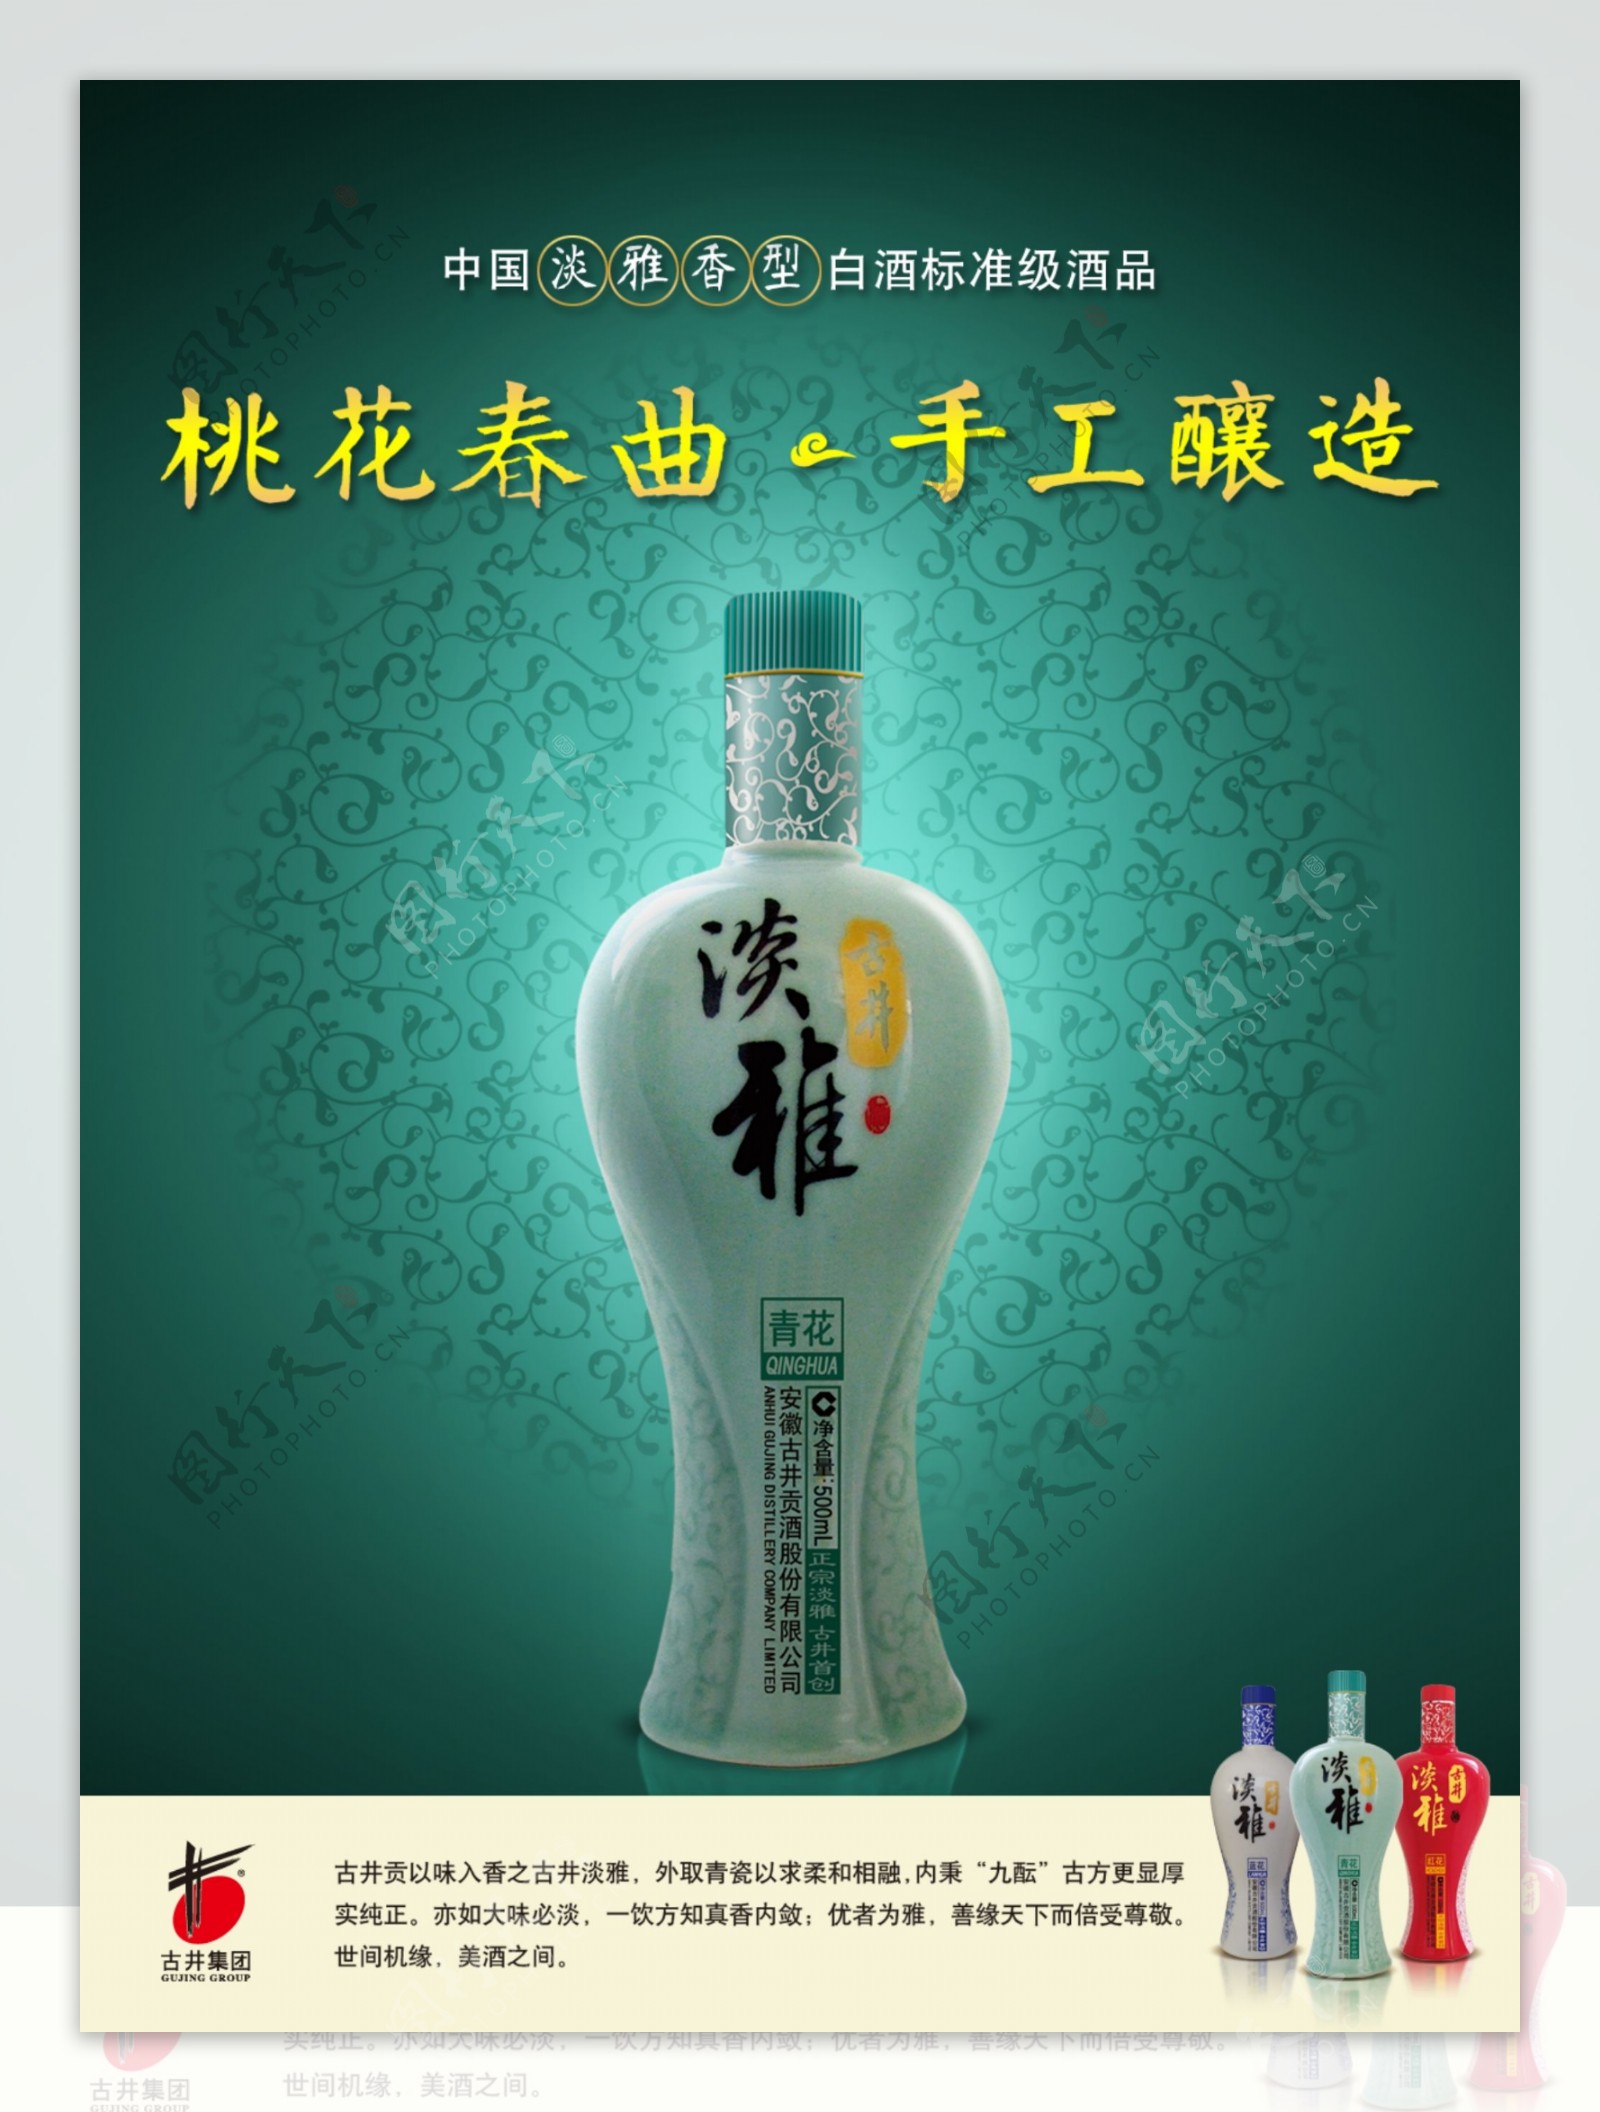 古井贡酒淡雅系列广告画面图片